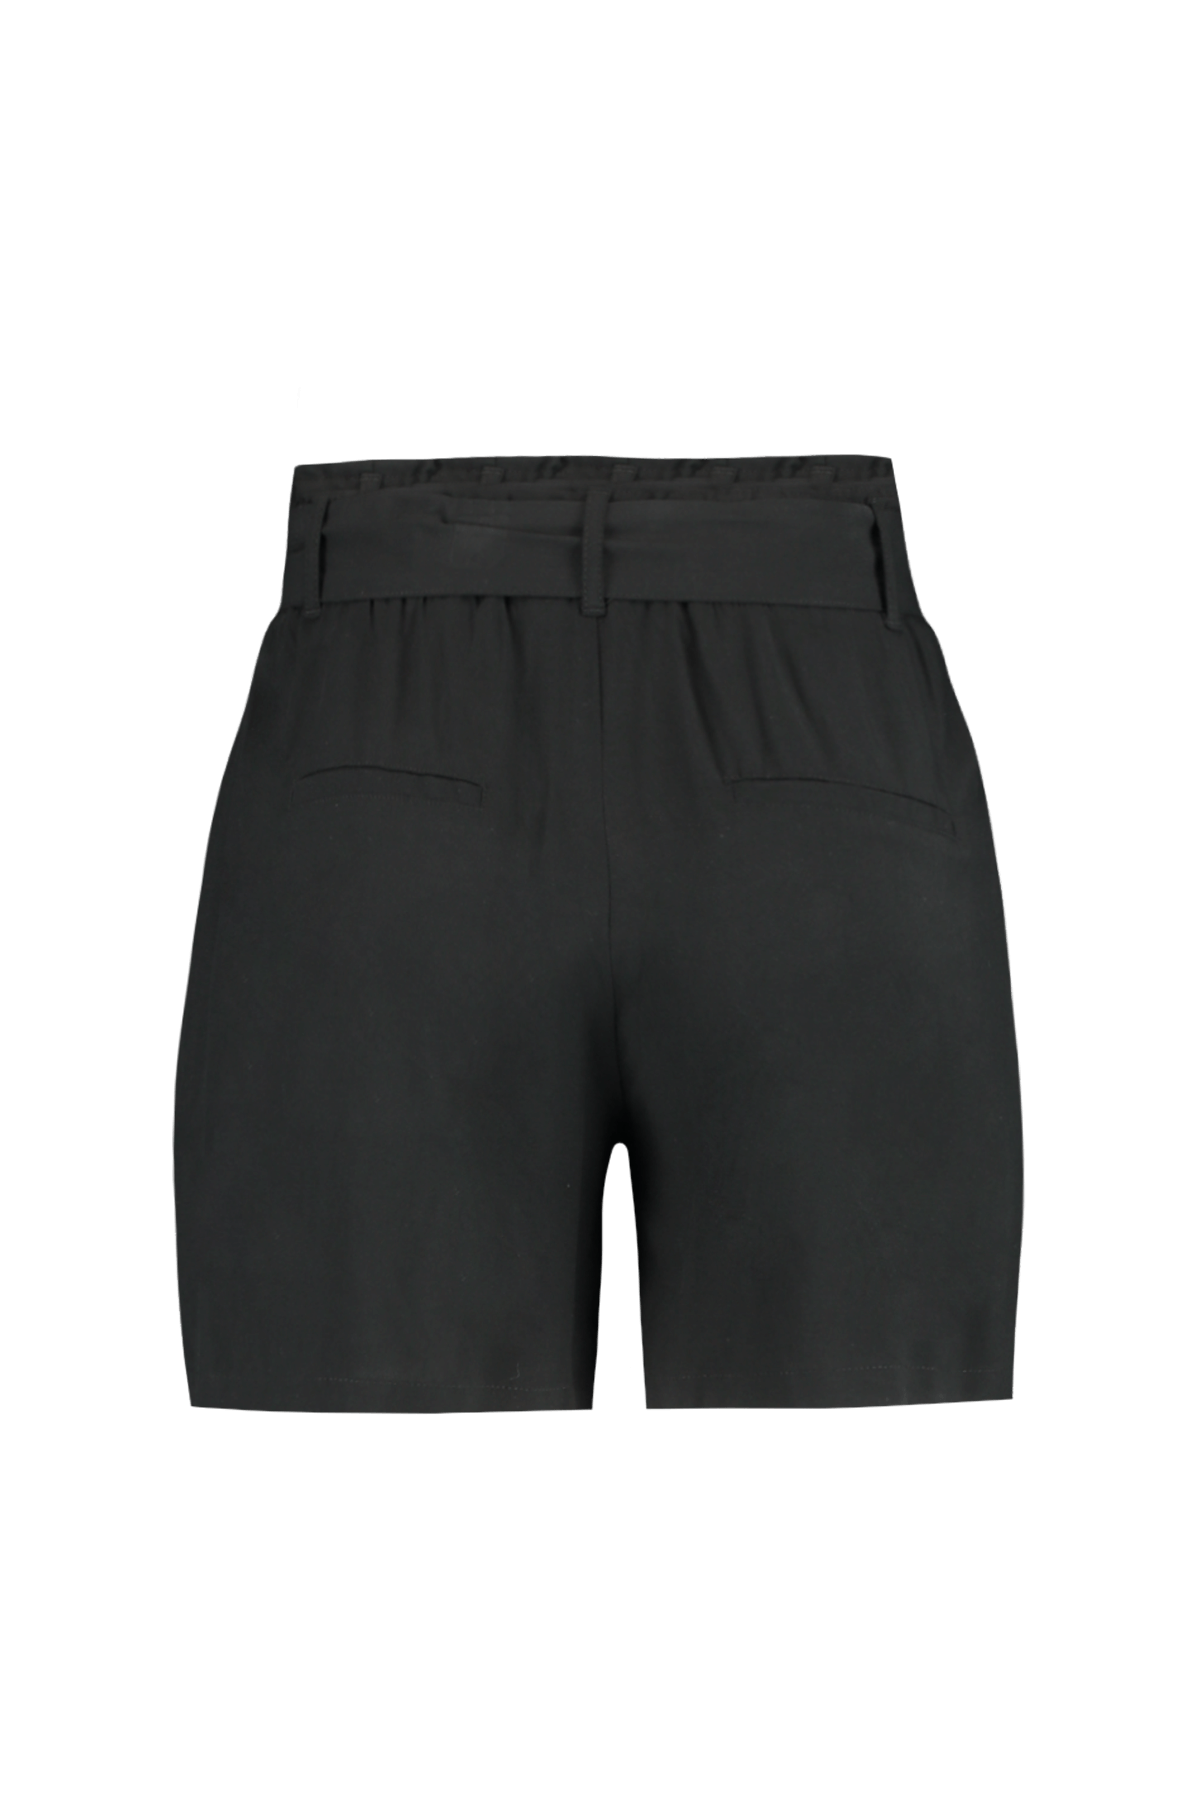 Shorts con cinturón  image 3